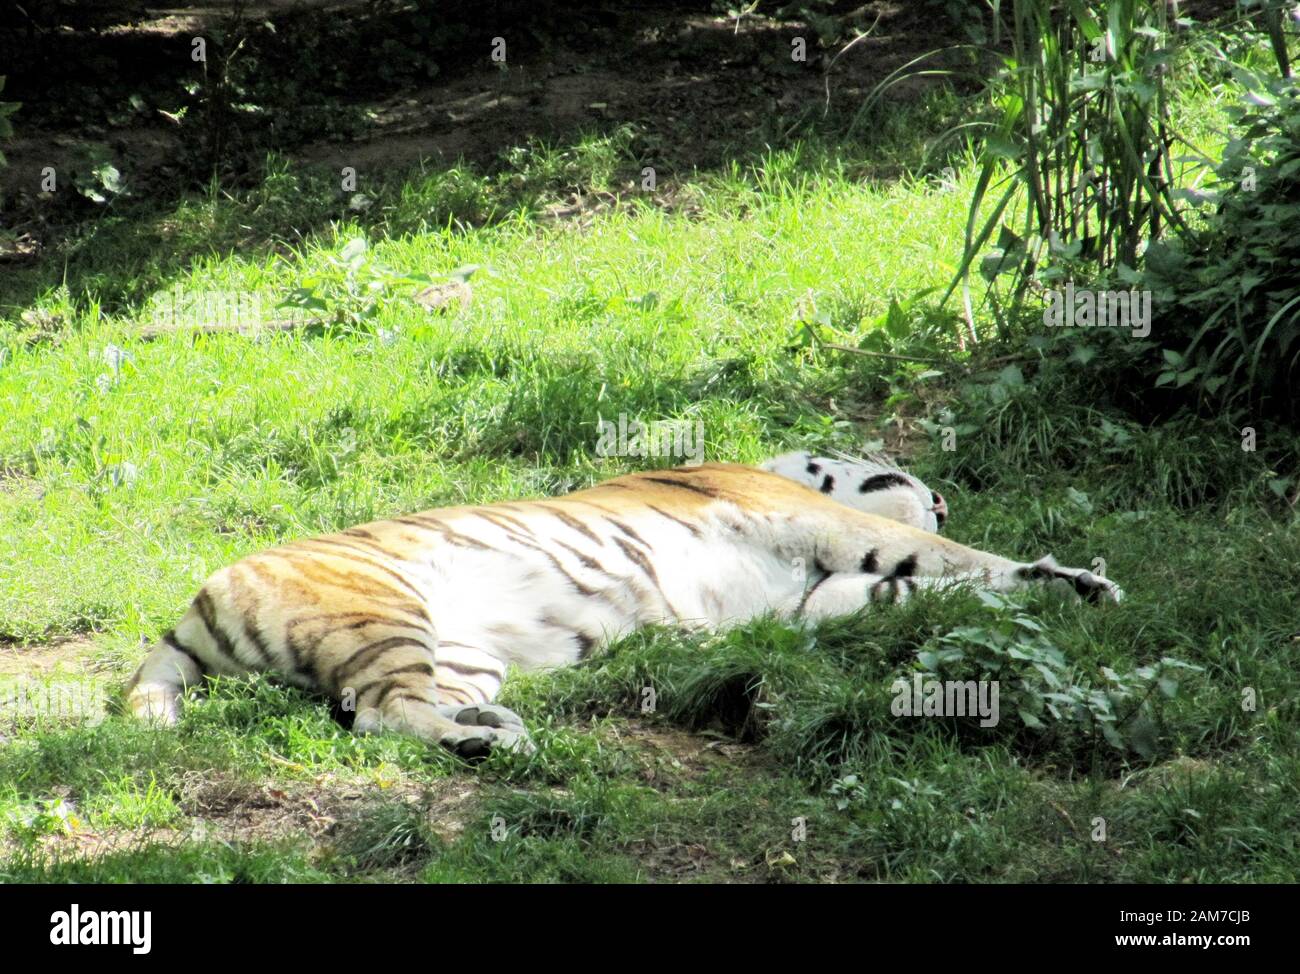 Der sibirische Tiger Panthera tigris altaica, auch Amur Tiger oder Ussuri Tiger genannt, ist eine Unterart des Tigers und die größte lebende Katze im wo Stockfoto